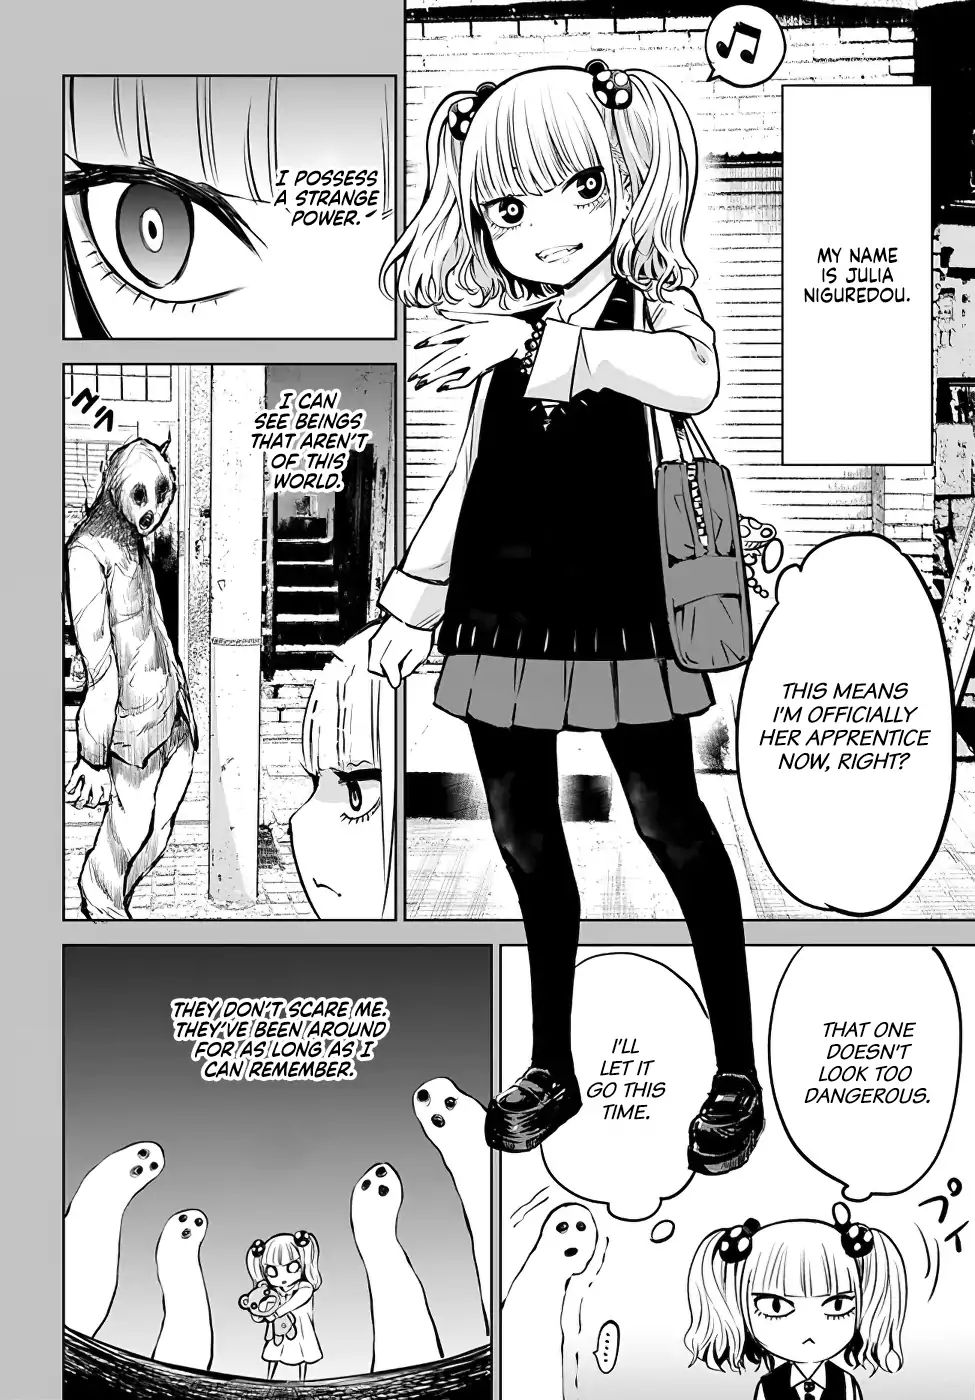 Manga – Página: 12 – Mangás Chan